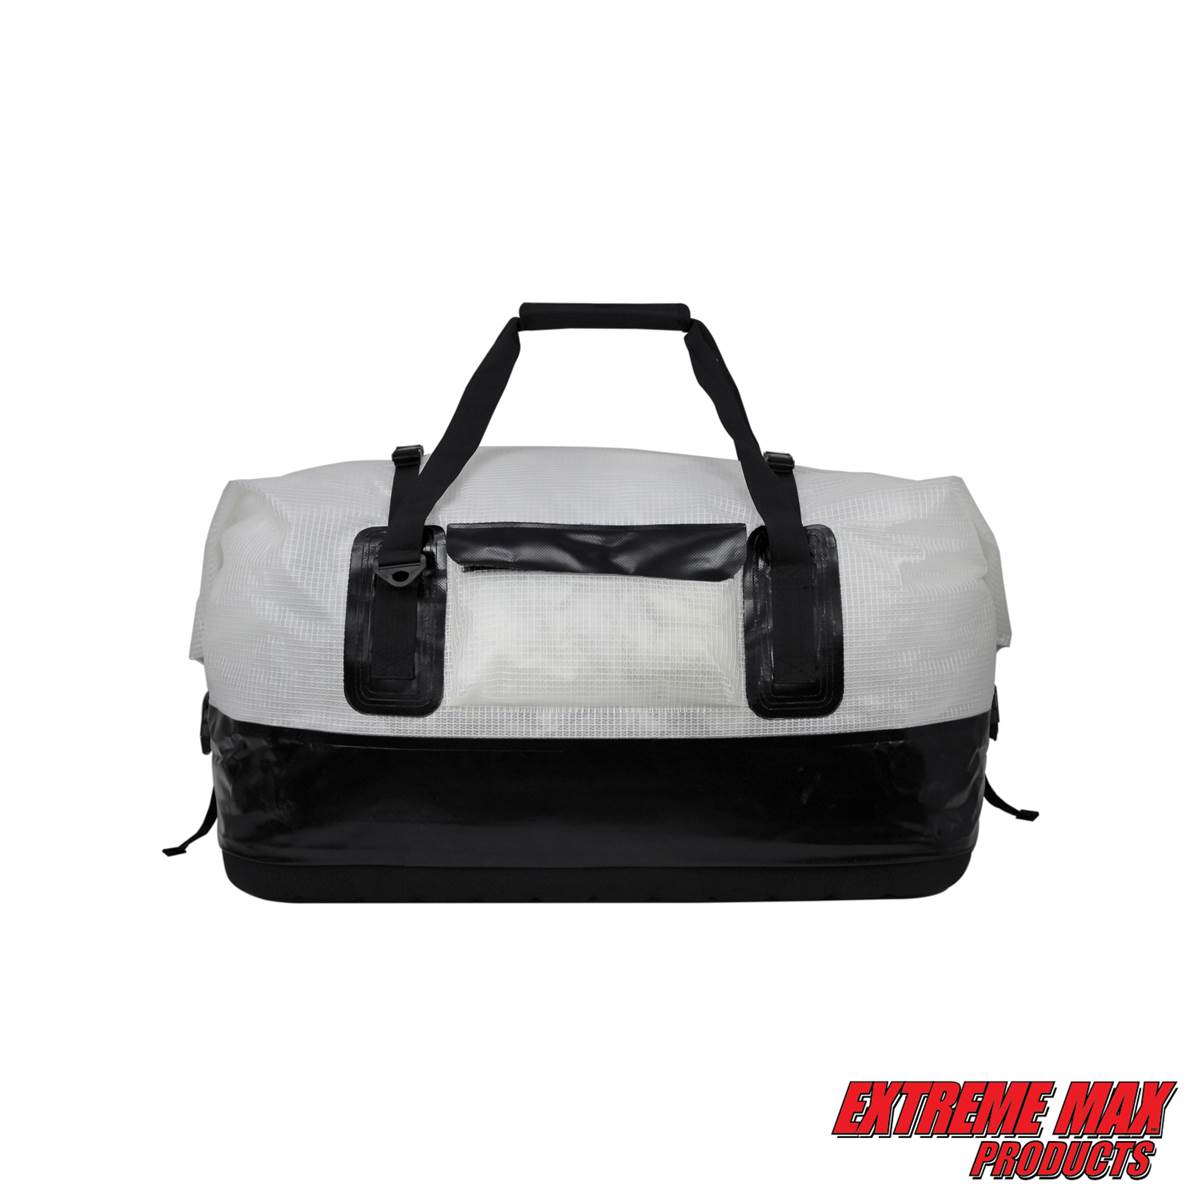 Dry Duffle Bag — Large Rolltop Dry Bag